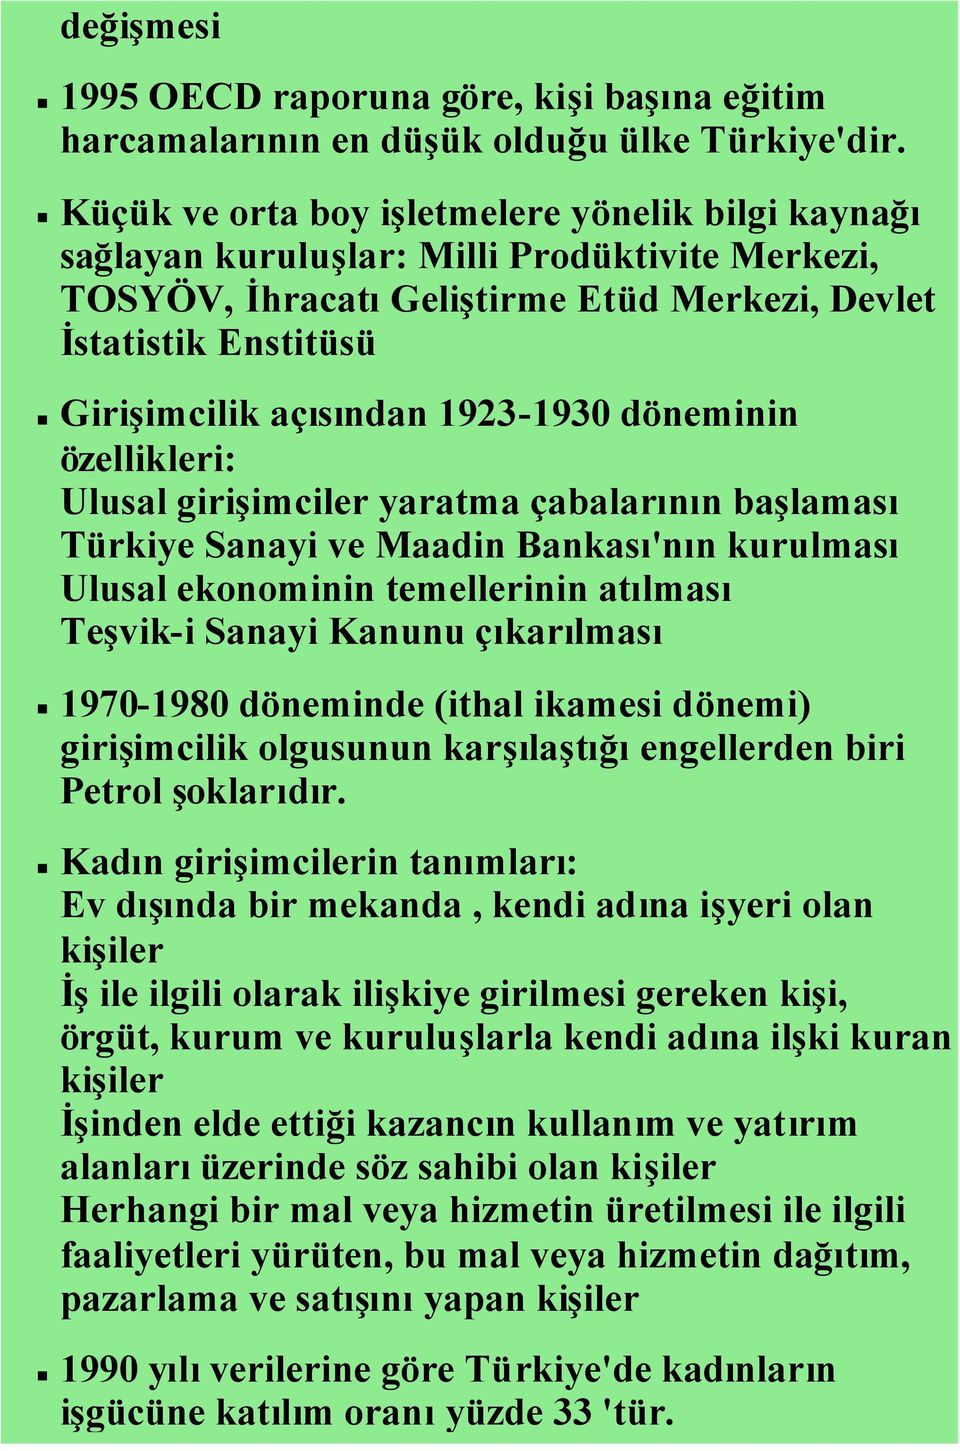 1923-1930 döneminin özellikleri: Ulusal girişimciler yaratma çabalarının başlaması Türkiye Sanayi ve Maadin Bankası'nın kurulması Ulusal ekonominin temellerinin atılması Teşvik-i Sanayi Kanunu